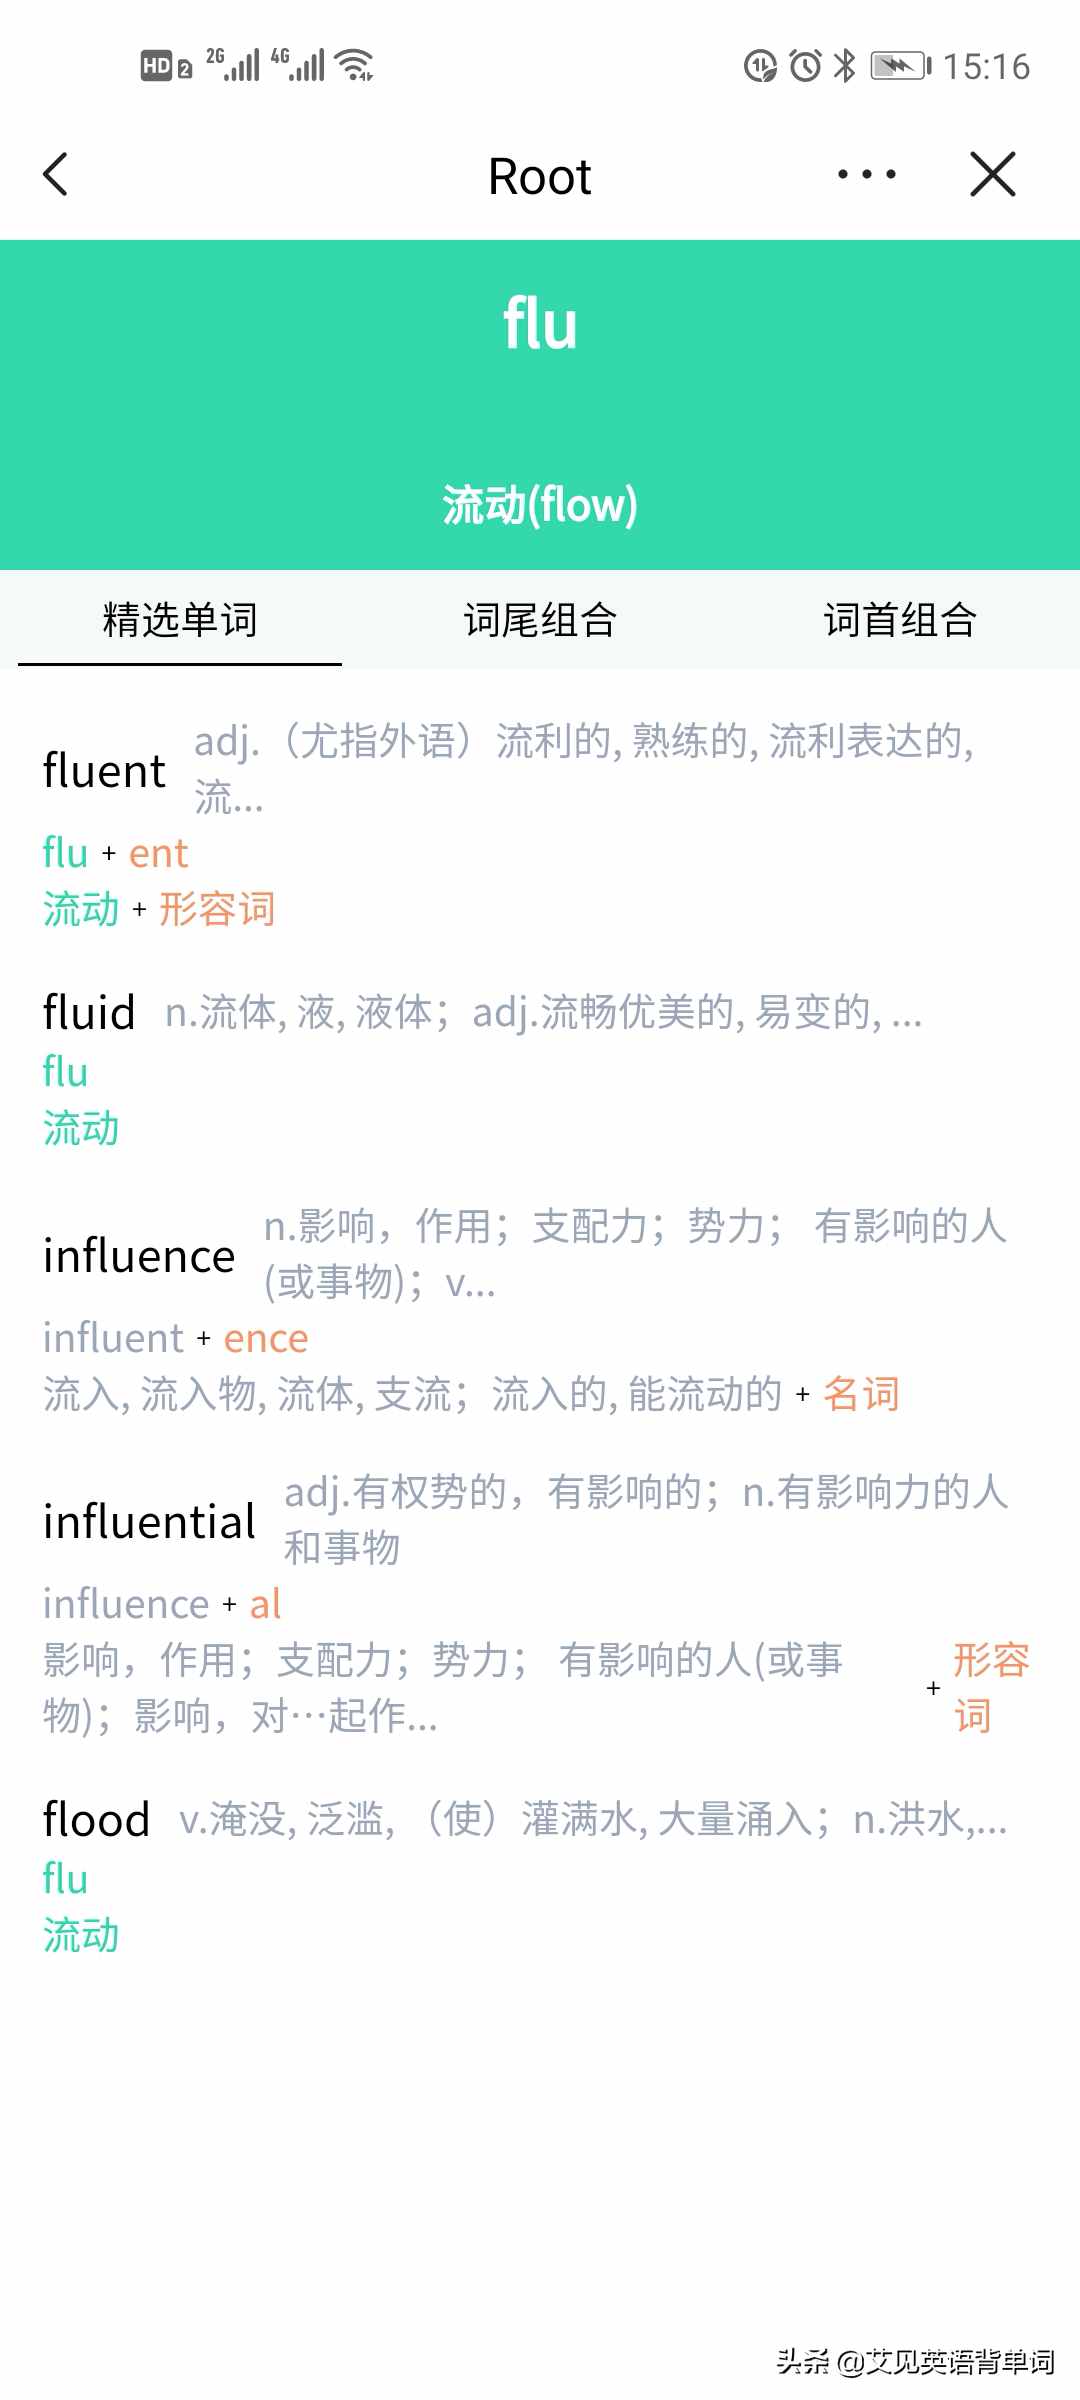 通过词根flu即流动的意思记忆fluent这个单词就很简单